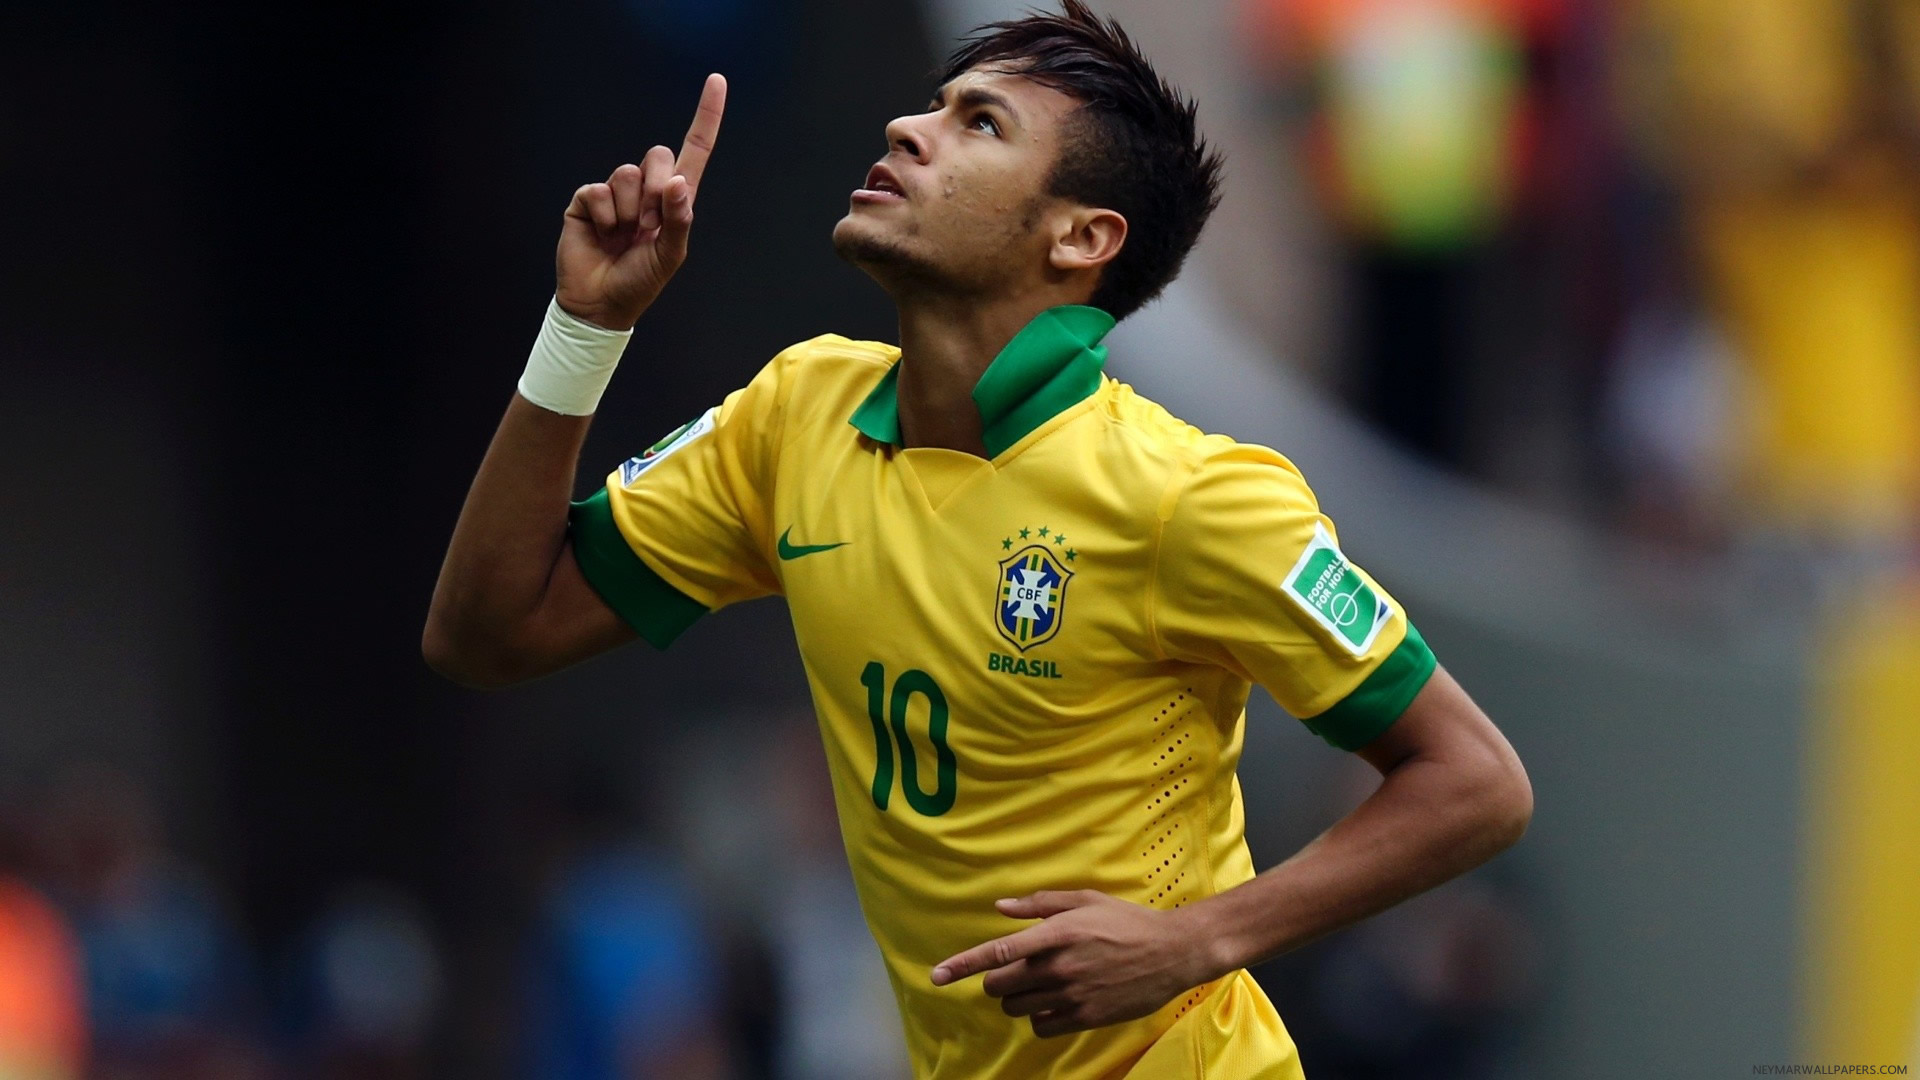 Neymar In Brazil Yellow Jersey Wallpaper - Football Players Photos Hd - HD Wallpaper 